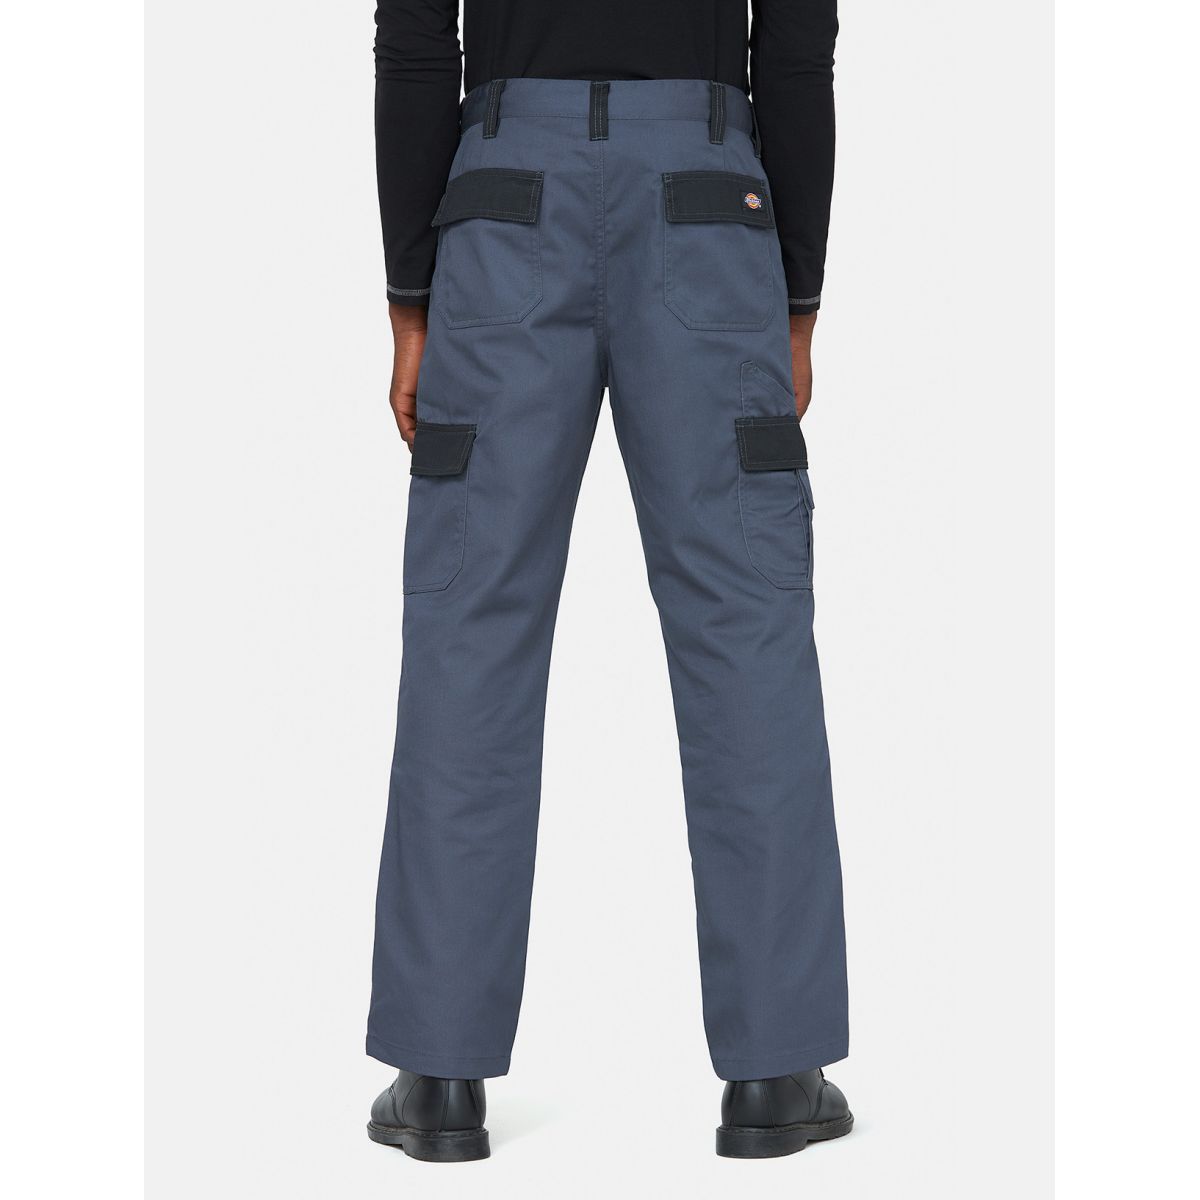 Pantalon Everyday Gris et noir- Dickies - Taille 42 1